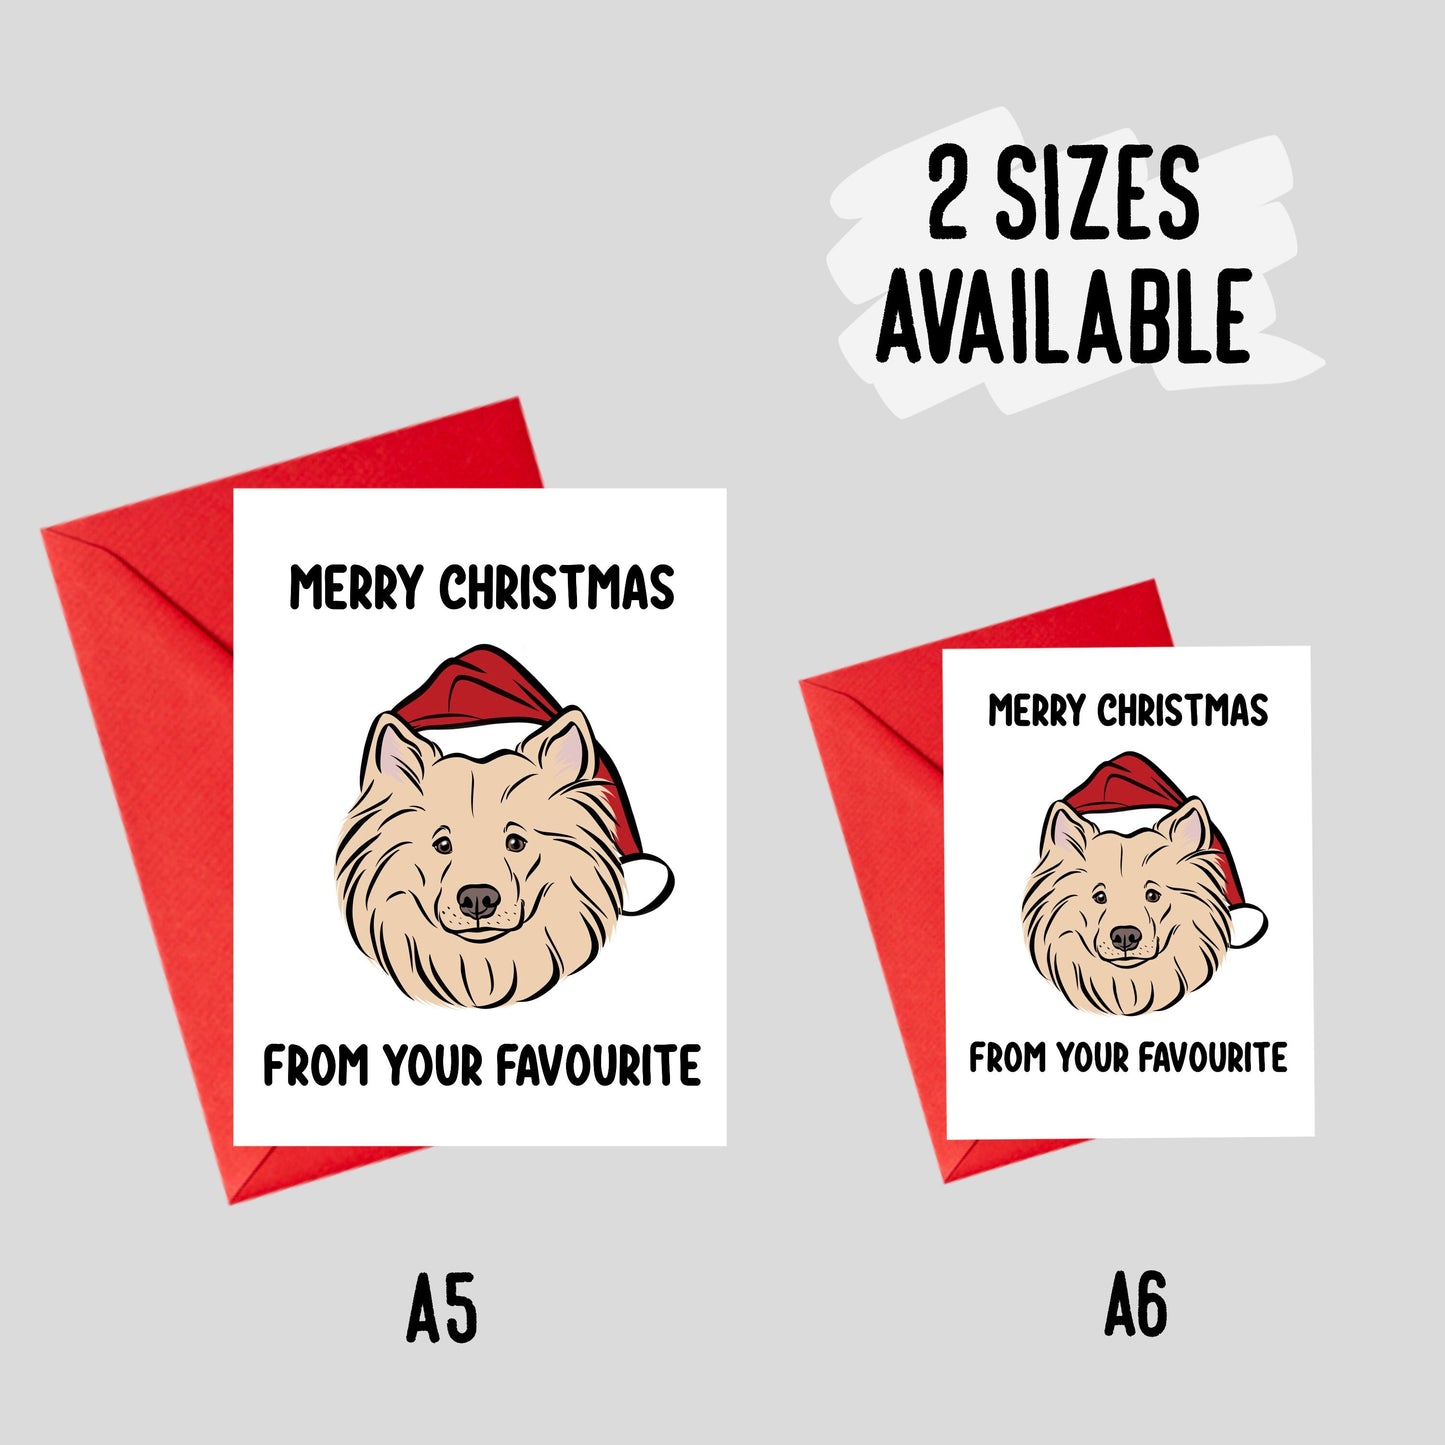 Samoyed Christmas Card/ Personalised Message Greeting Card/ Cute Samoyed Drawing Card/ Merry Christmas Celebration Dog Card/ Samoyed Owner